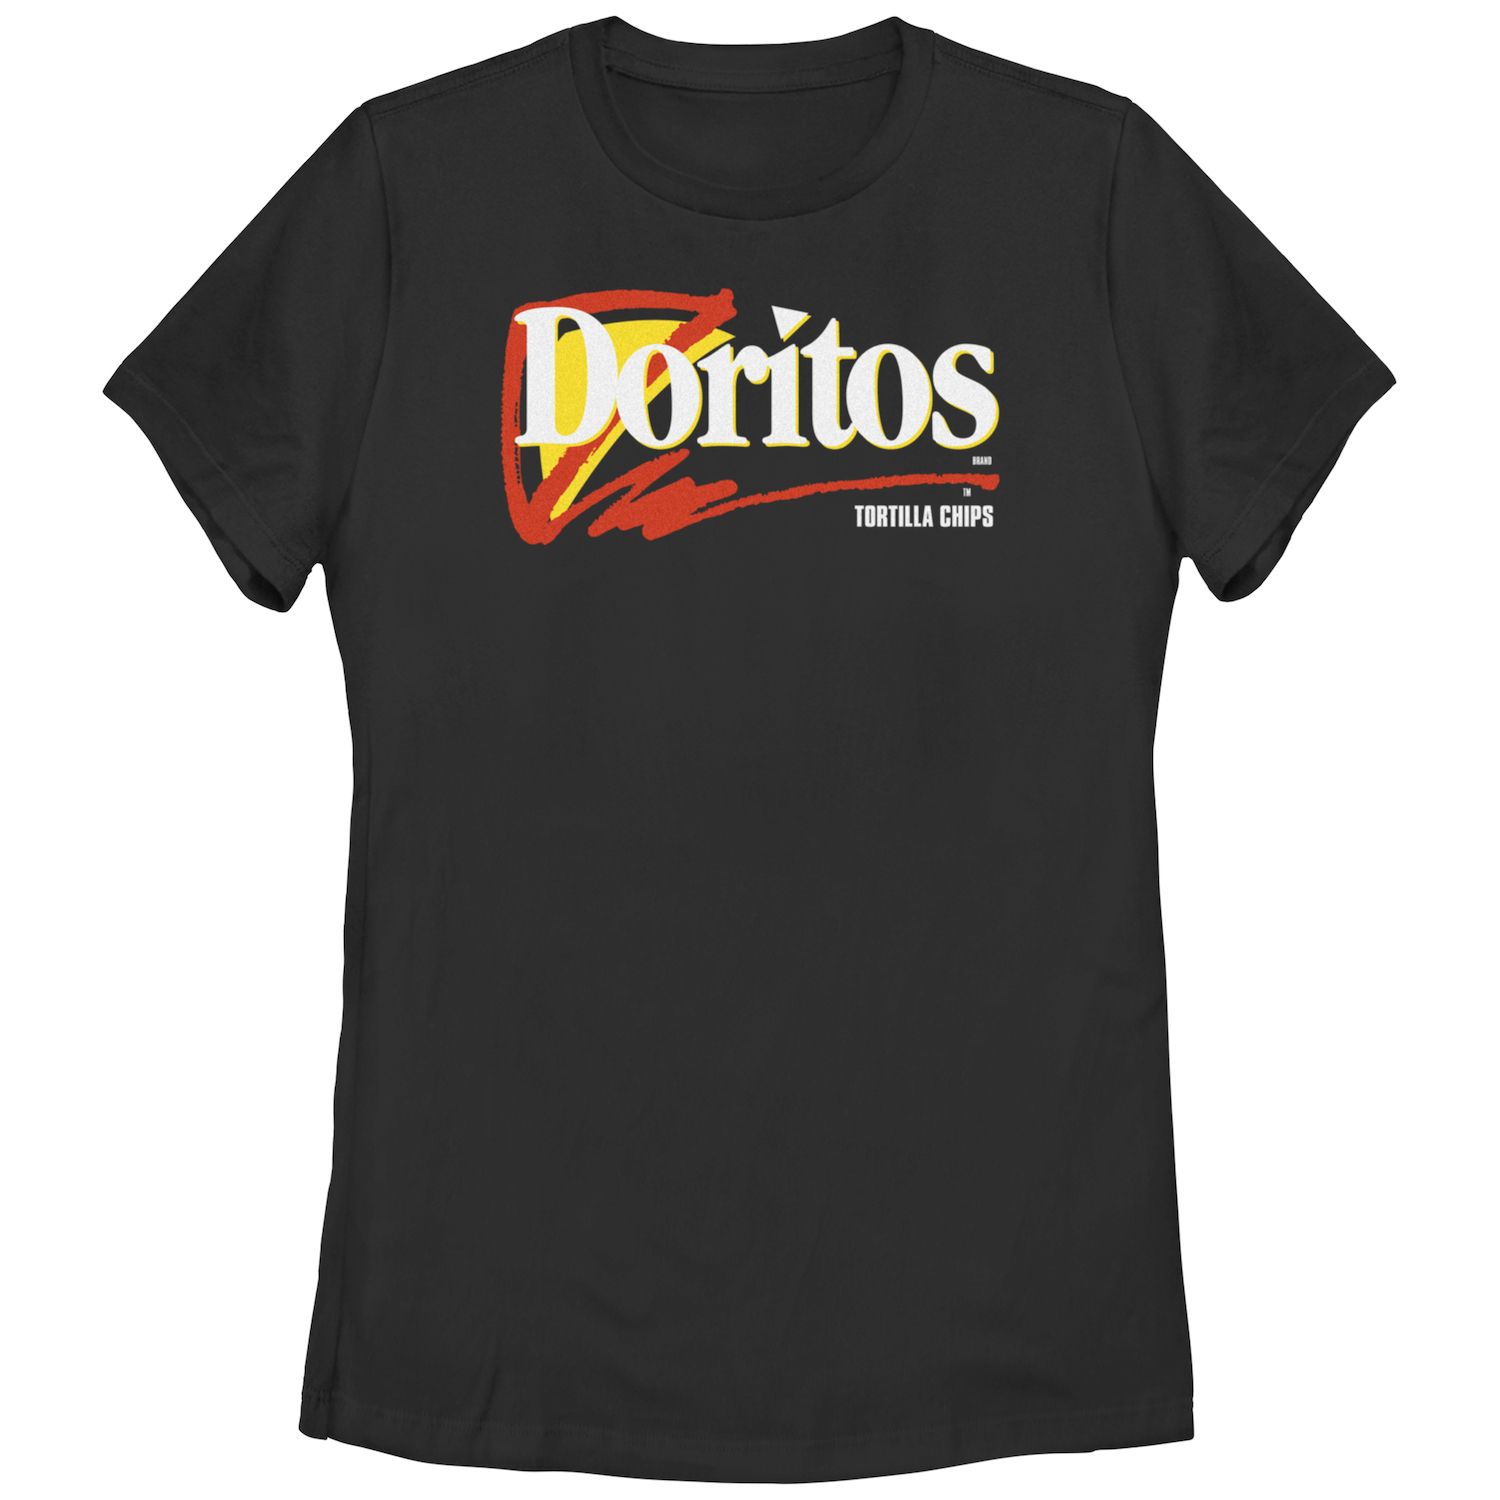 Детская футболка с логотипом Doritos Tortilla Chips и графическим рисунком Doritos